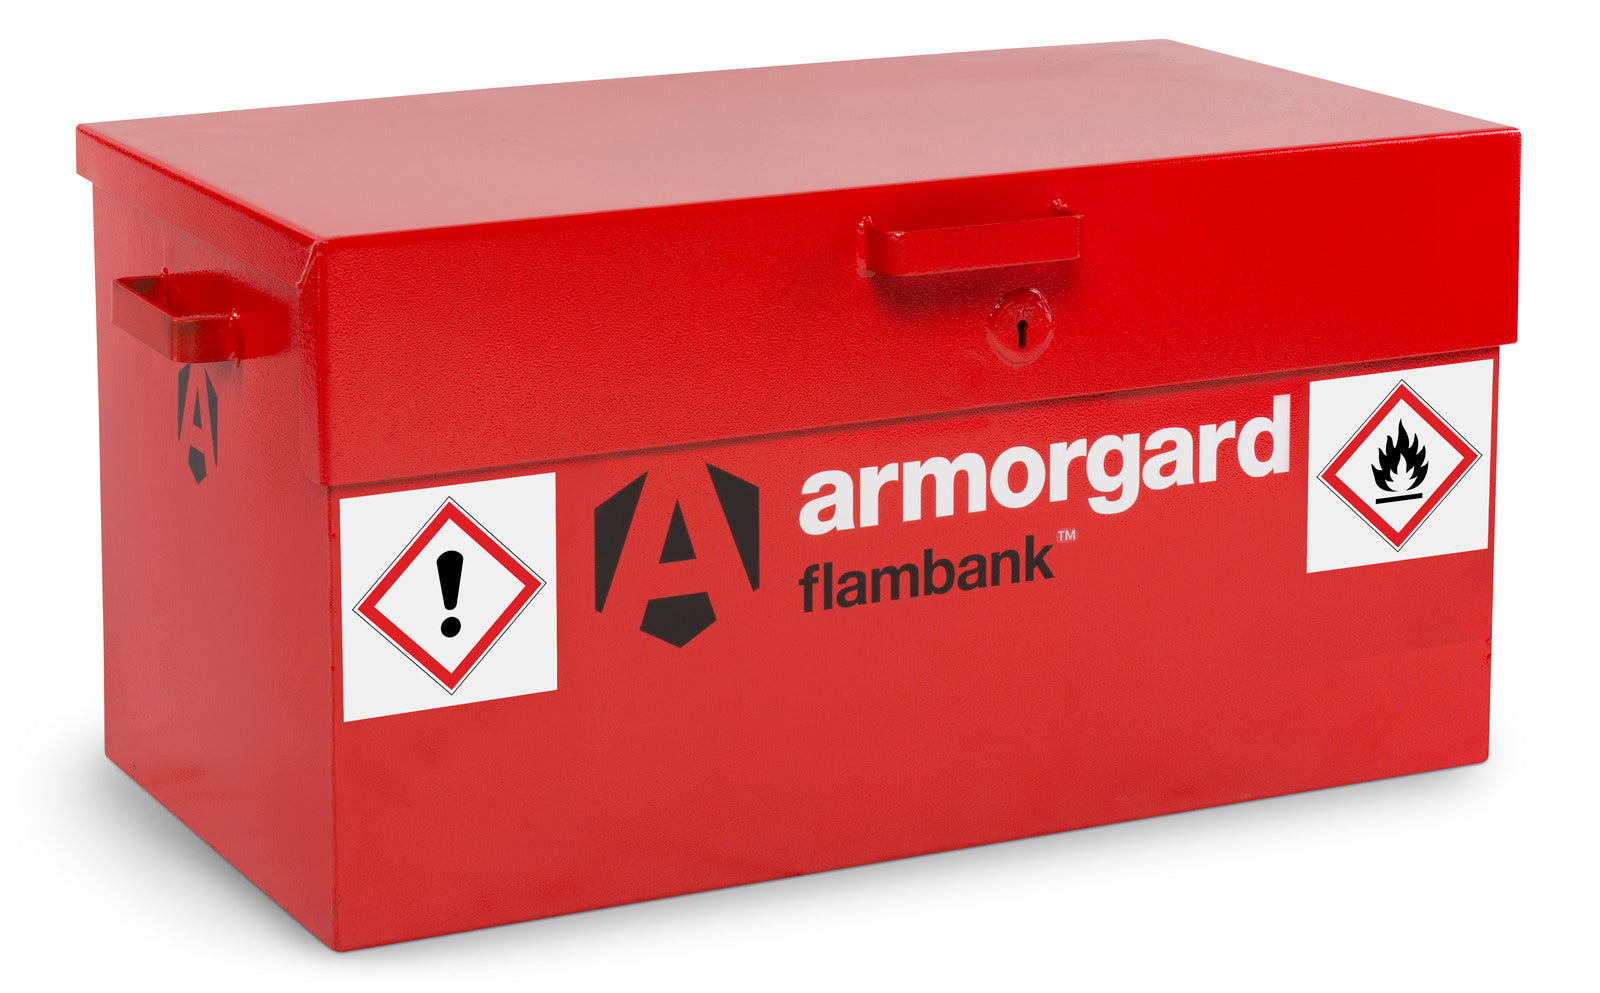 Armorgard FlamBank™